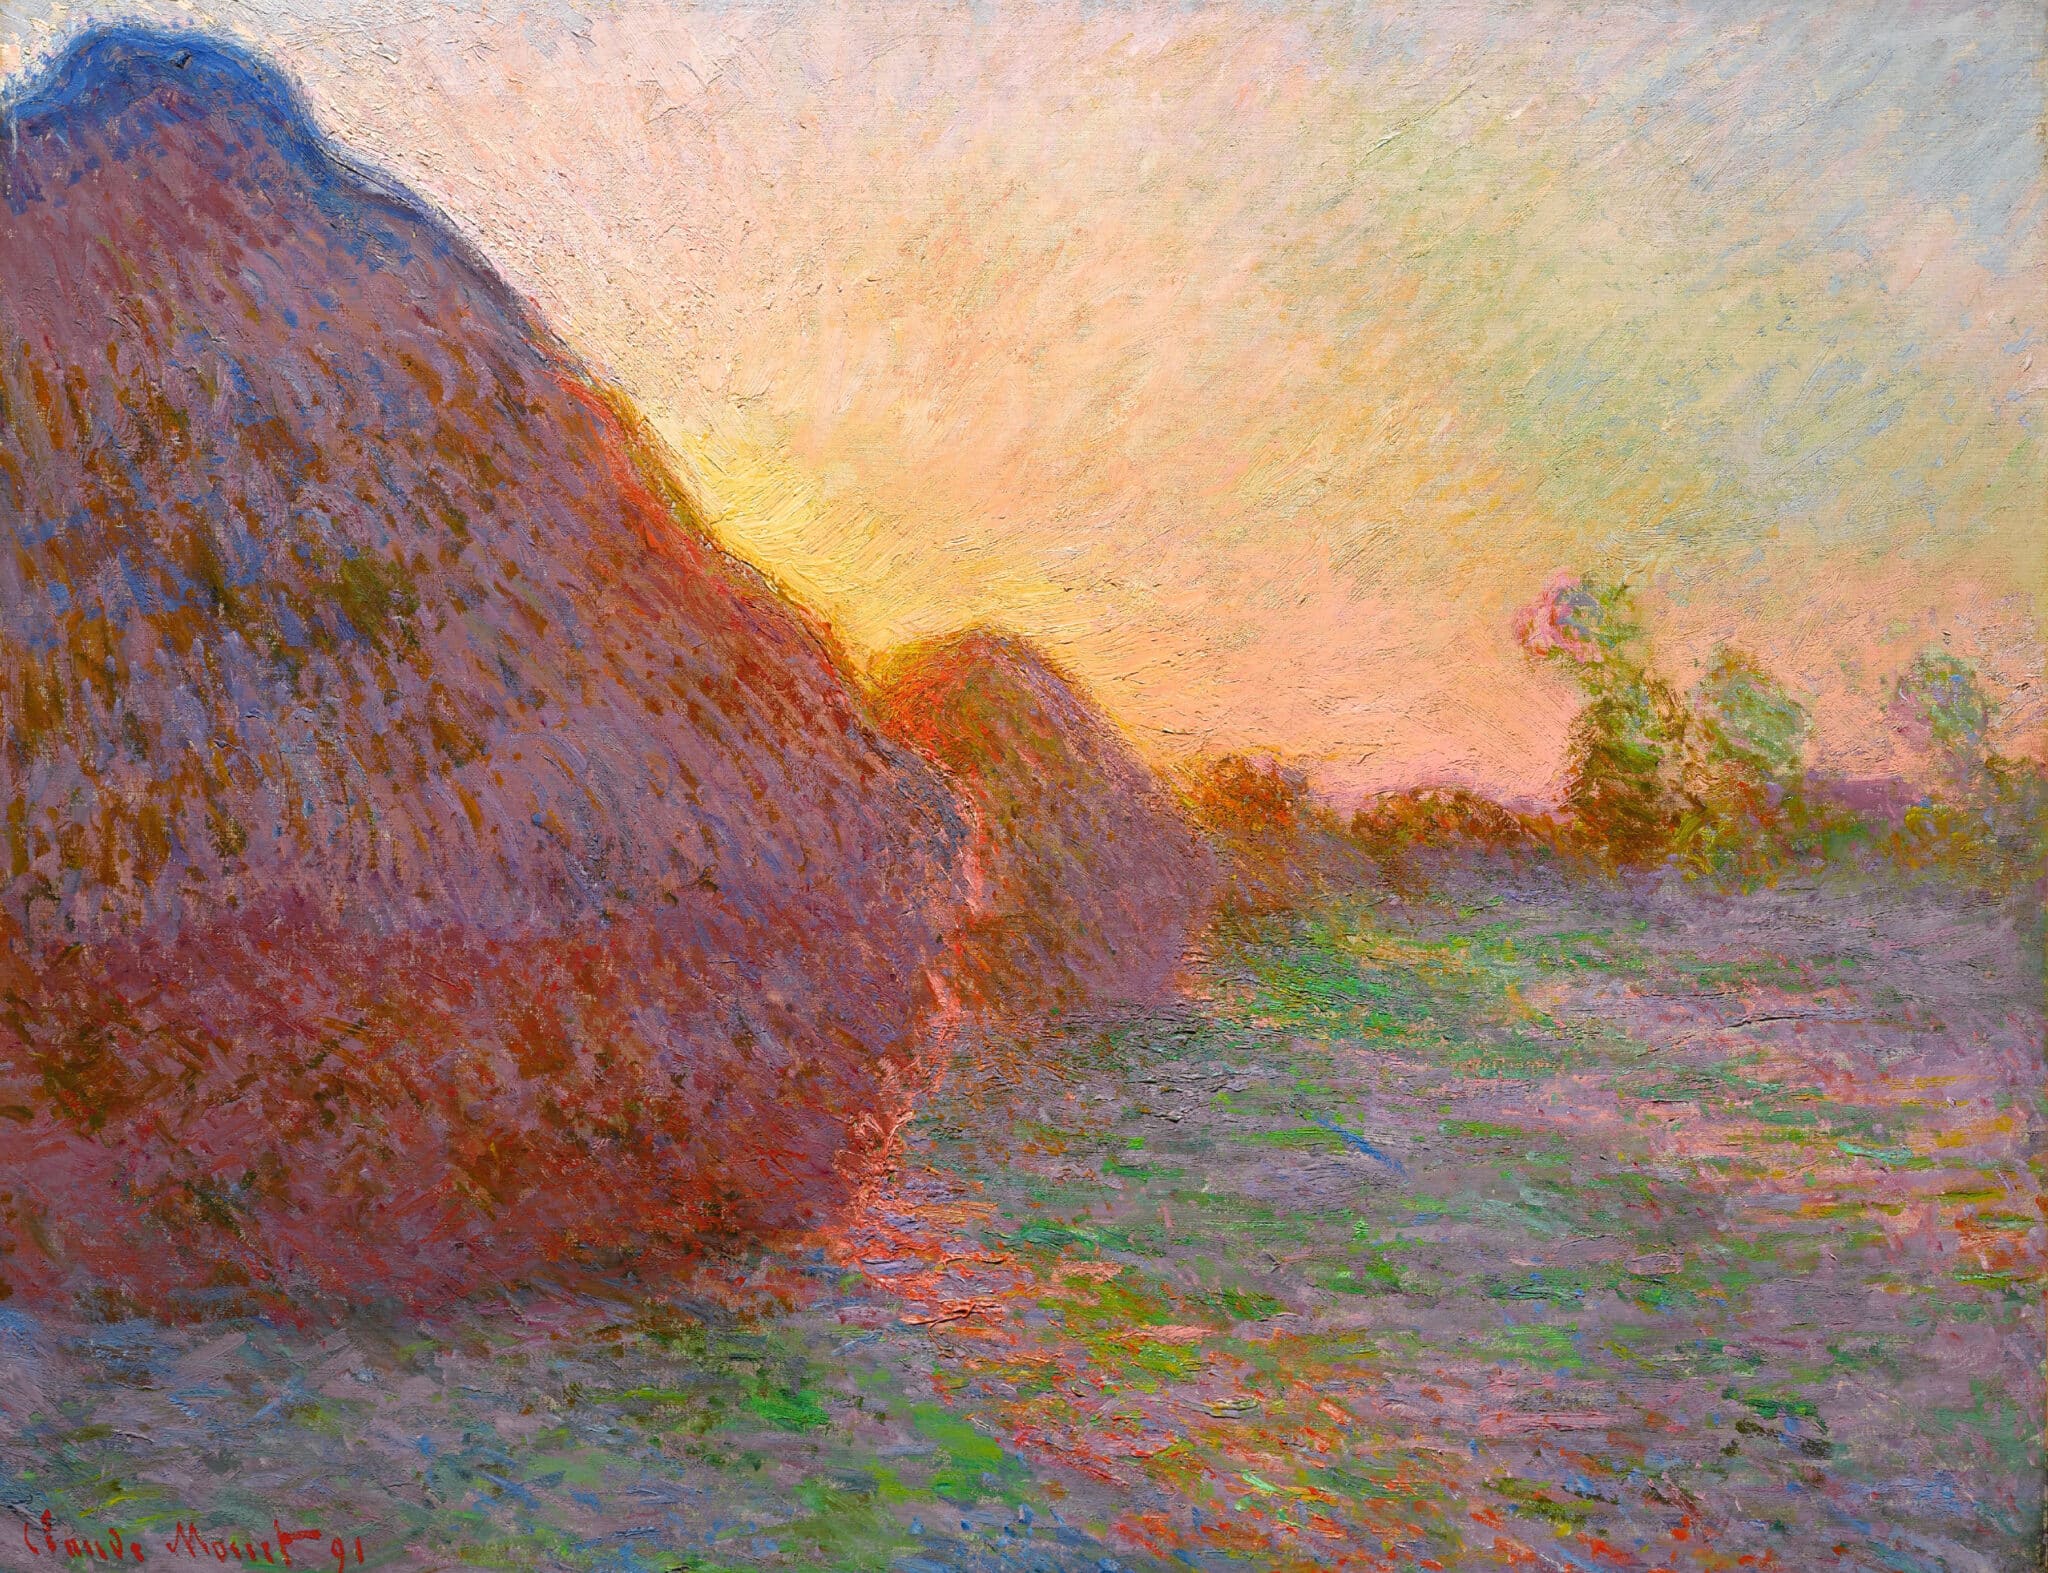 Claude Monet. Getreideschober, 1890. Öl auf Leinwand, 73 x 92,5 cm. Sammlung Hasso Plattner